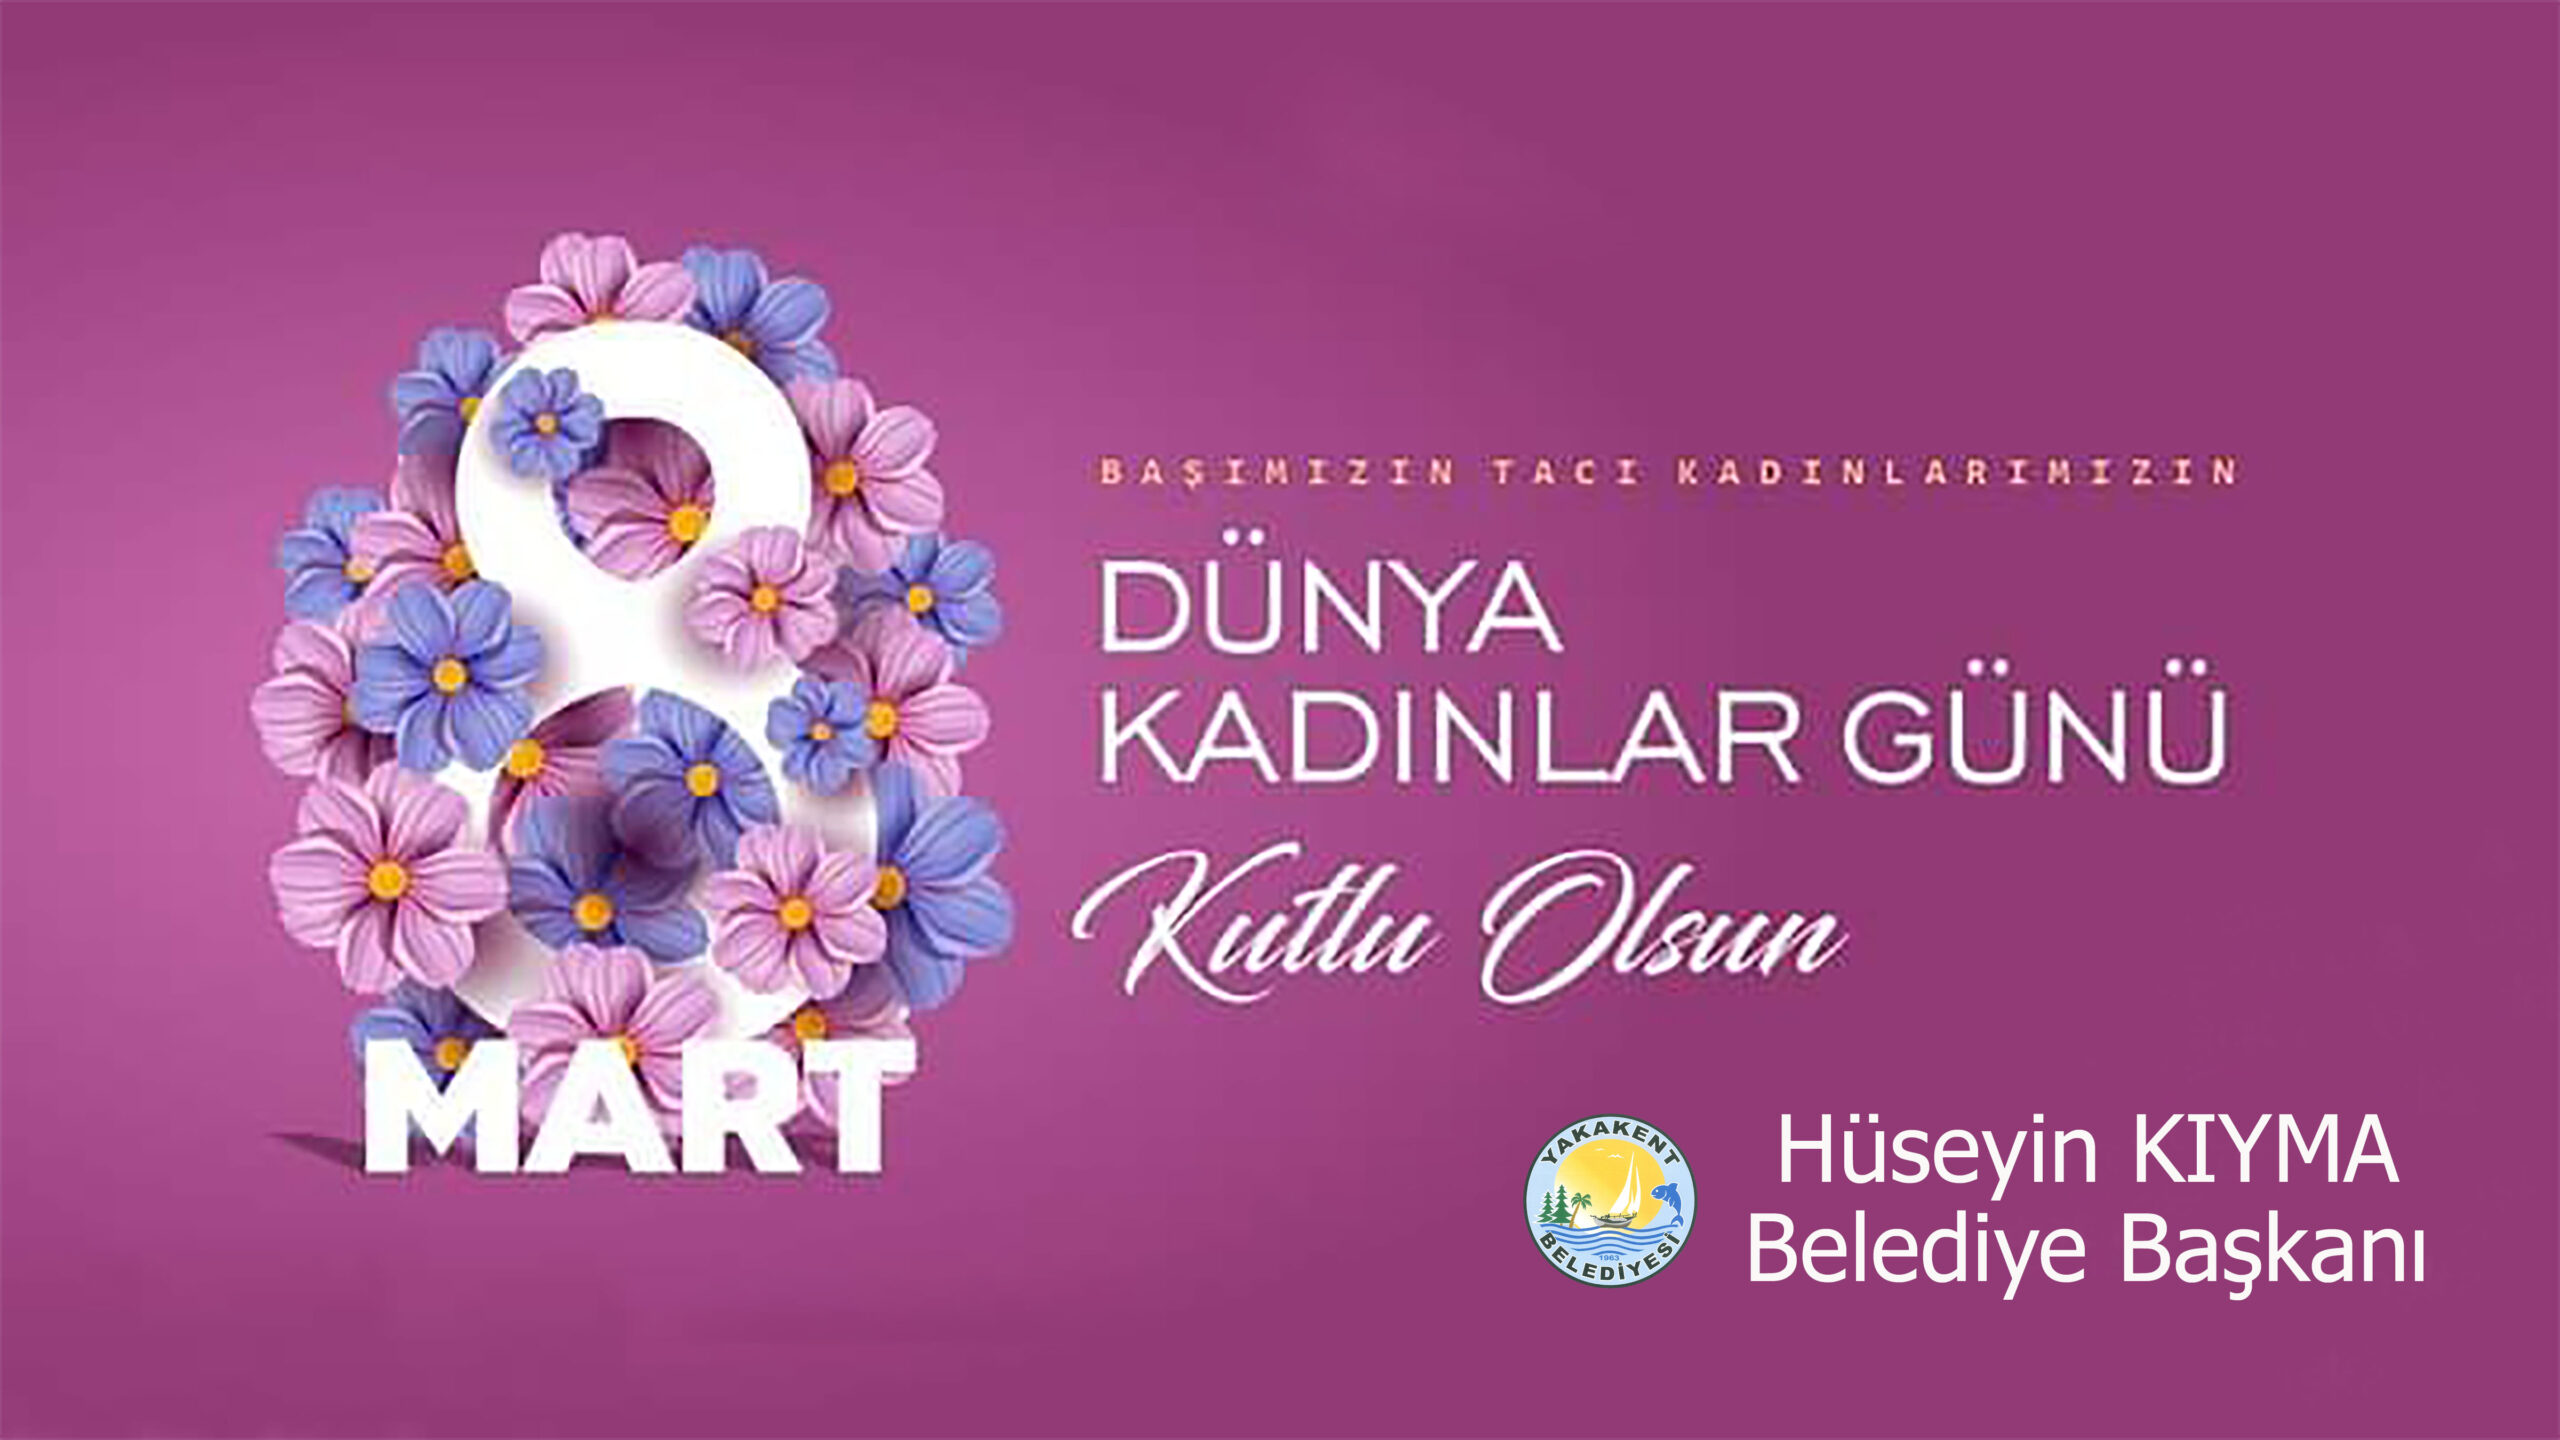 Belediye Başkanımız Hüseyin KIYMA, 8 Mart Dünya Kadınlar Günü münasebetiyle bir mesaj yayınladı.